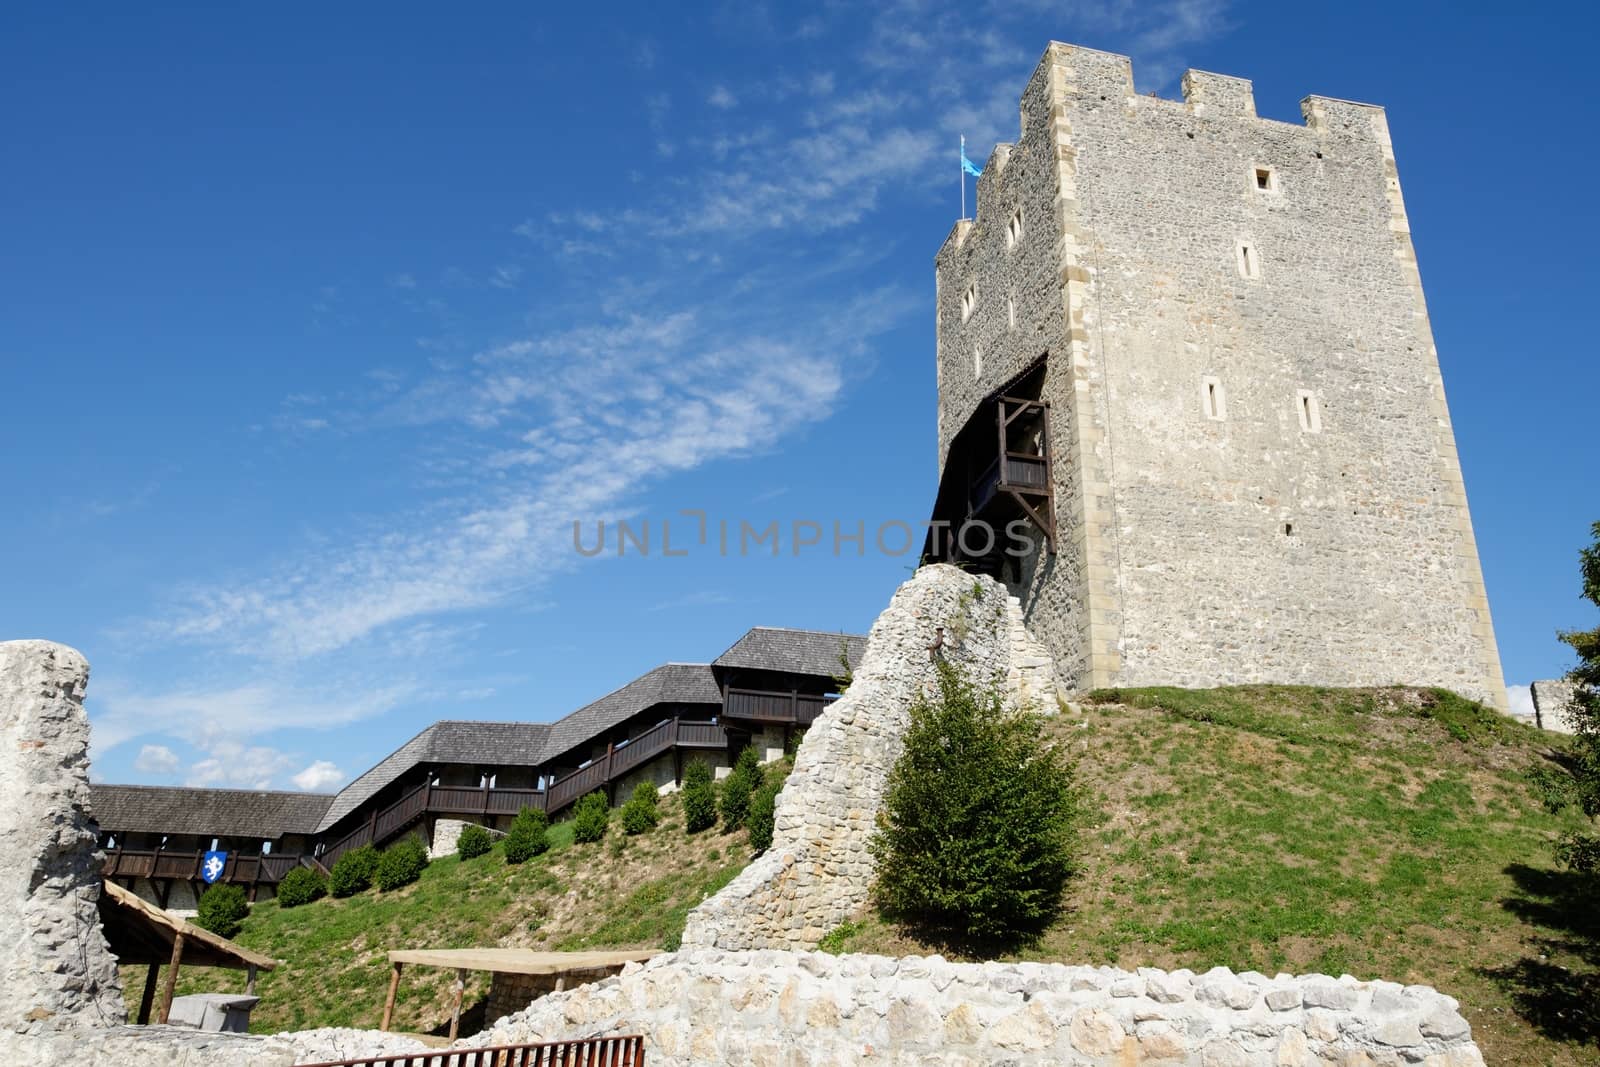 Celje medieval castle in Slovenia